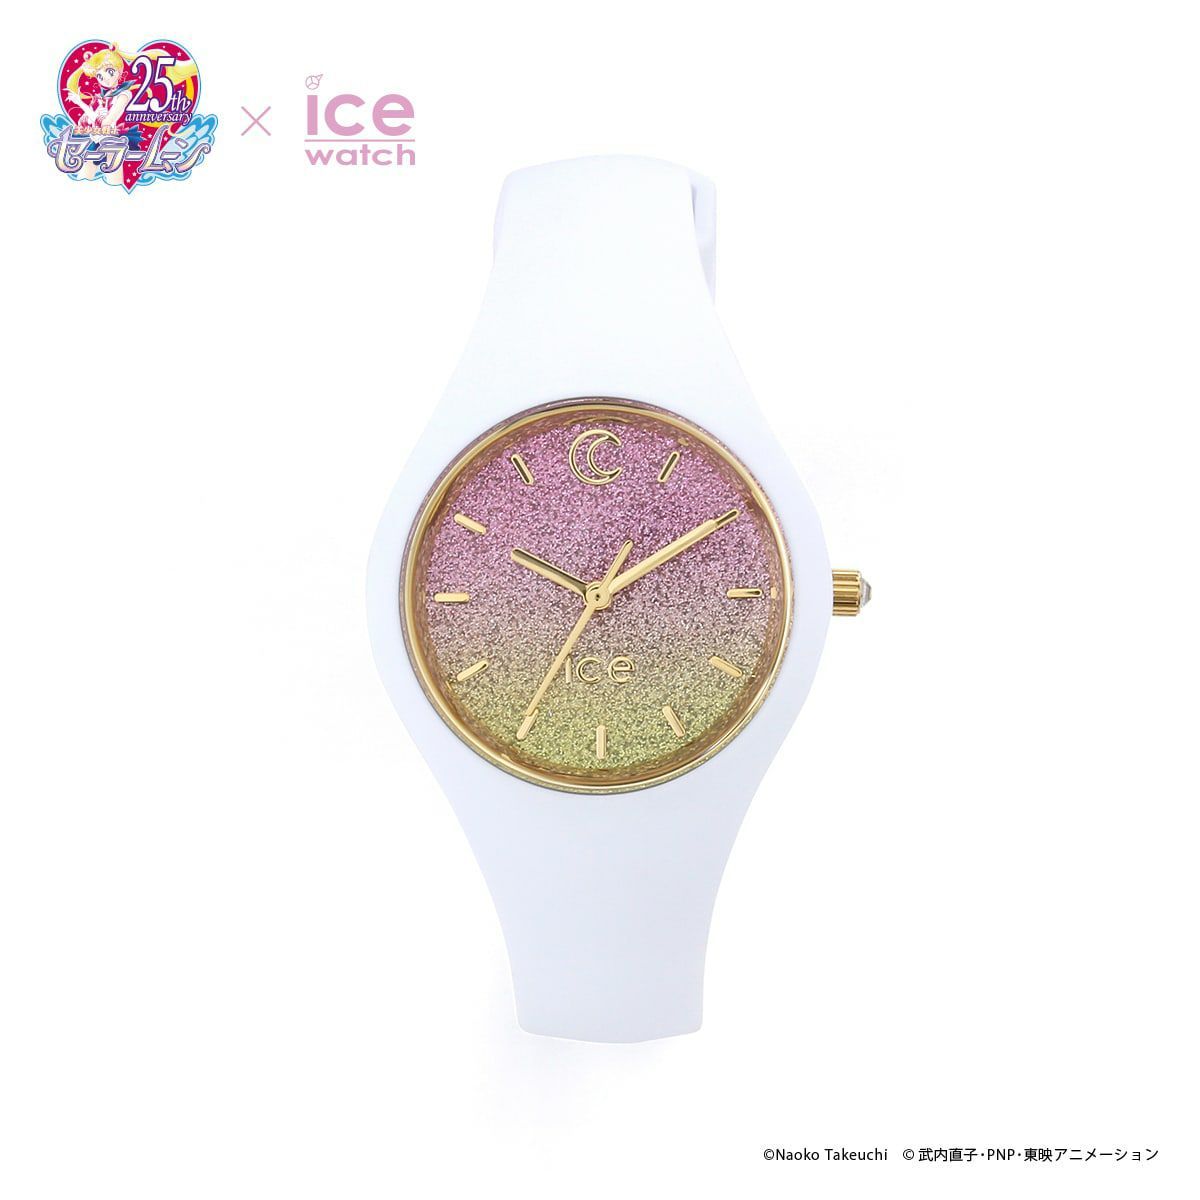 ICE WATCH アイスウォッチ 腕時計 ICE ムーンライトコラボレーション セーラームーン モデル スモール 017201【数量限定】_画像2